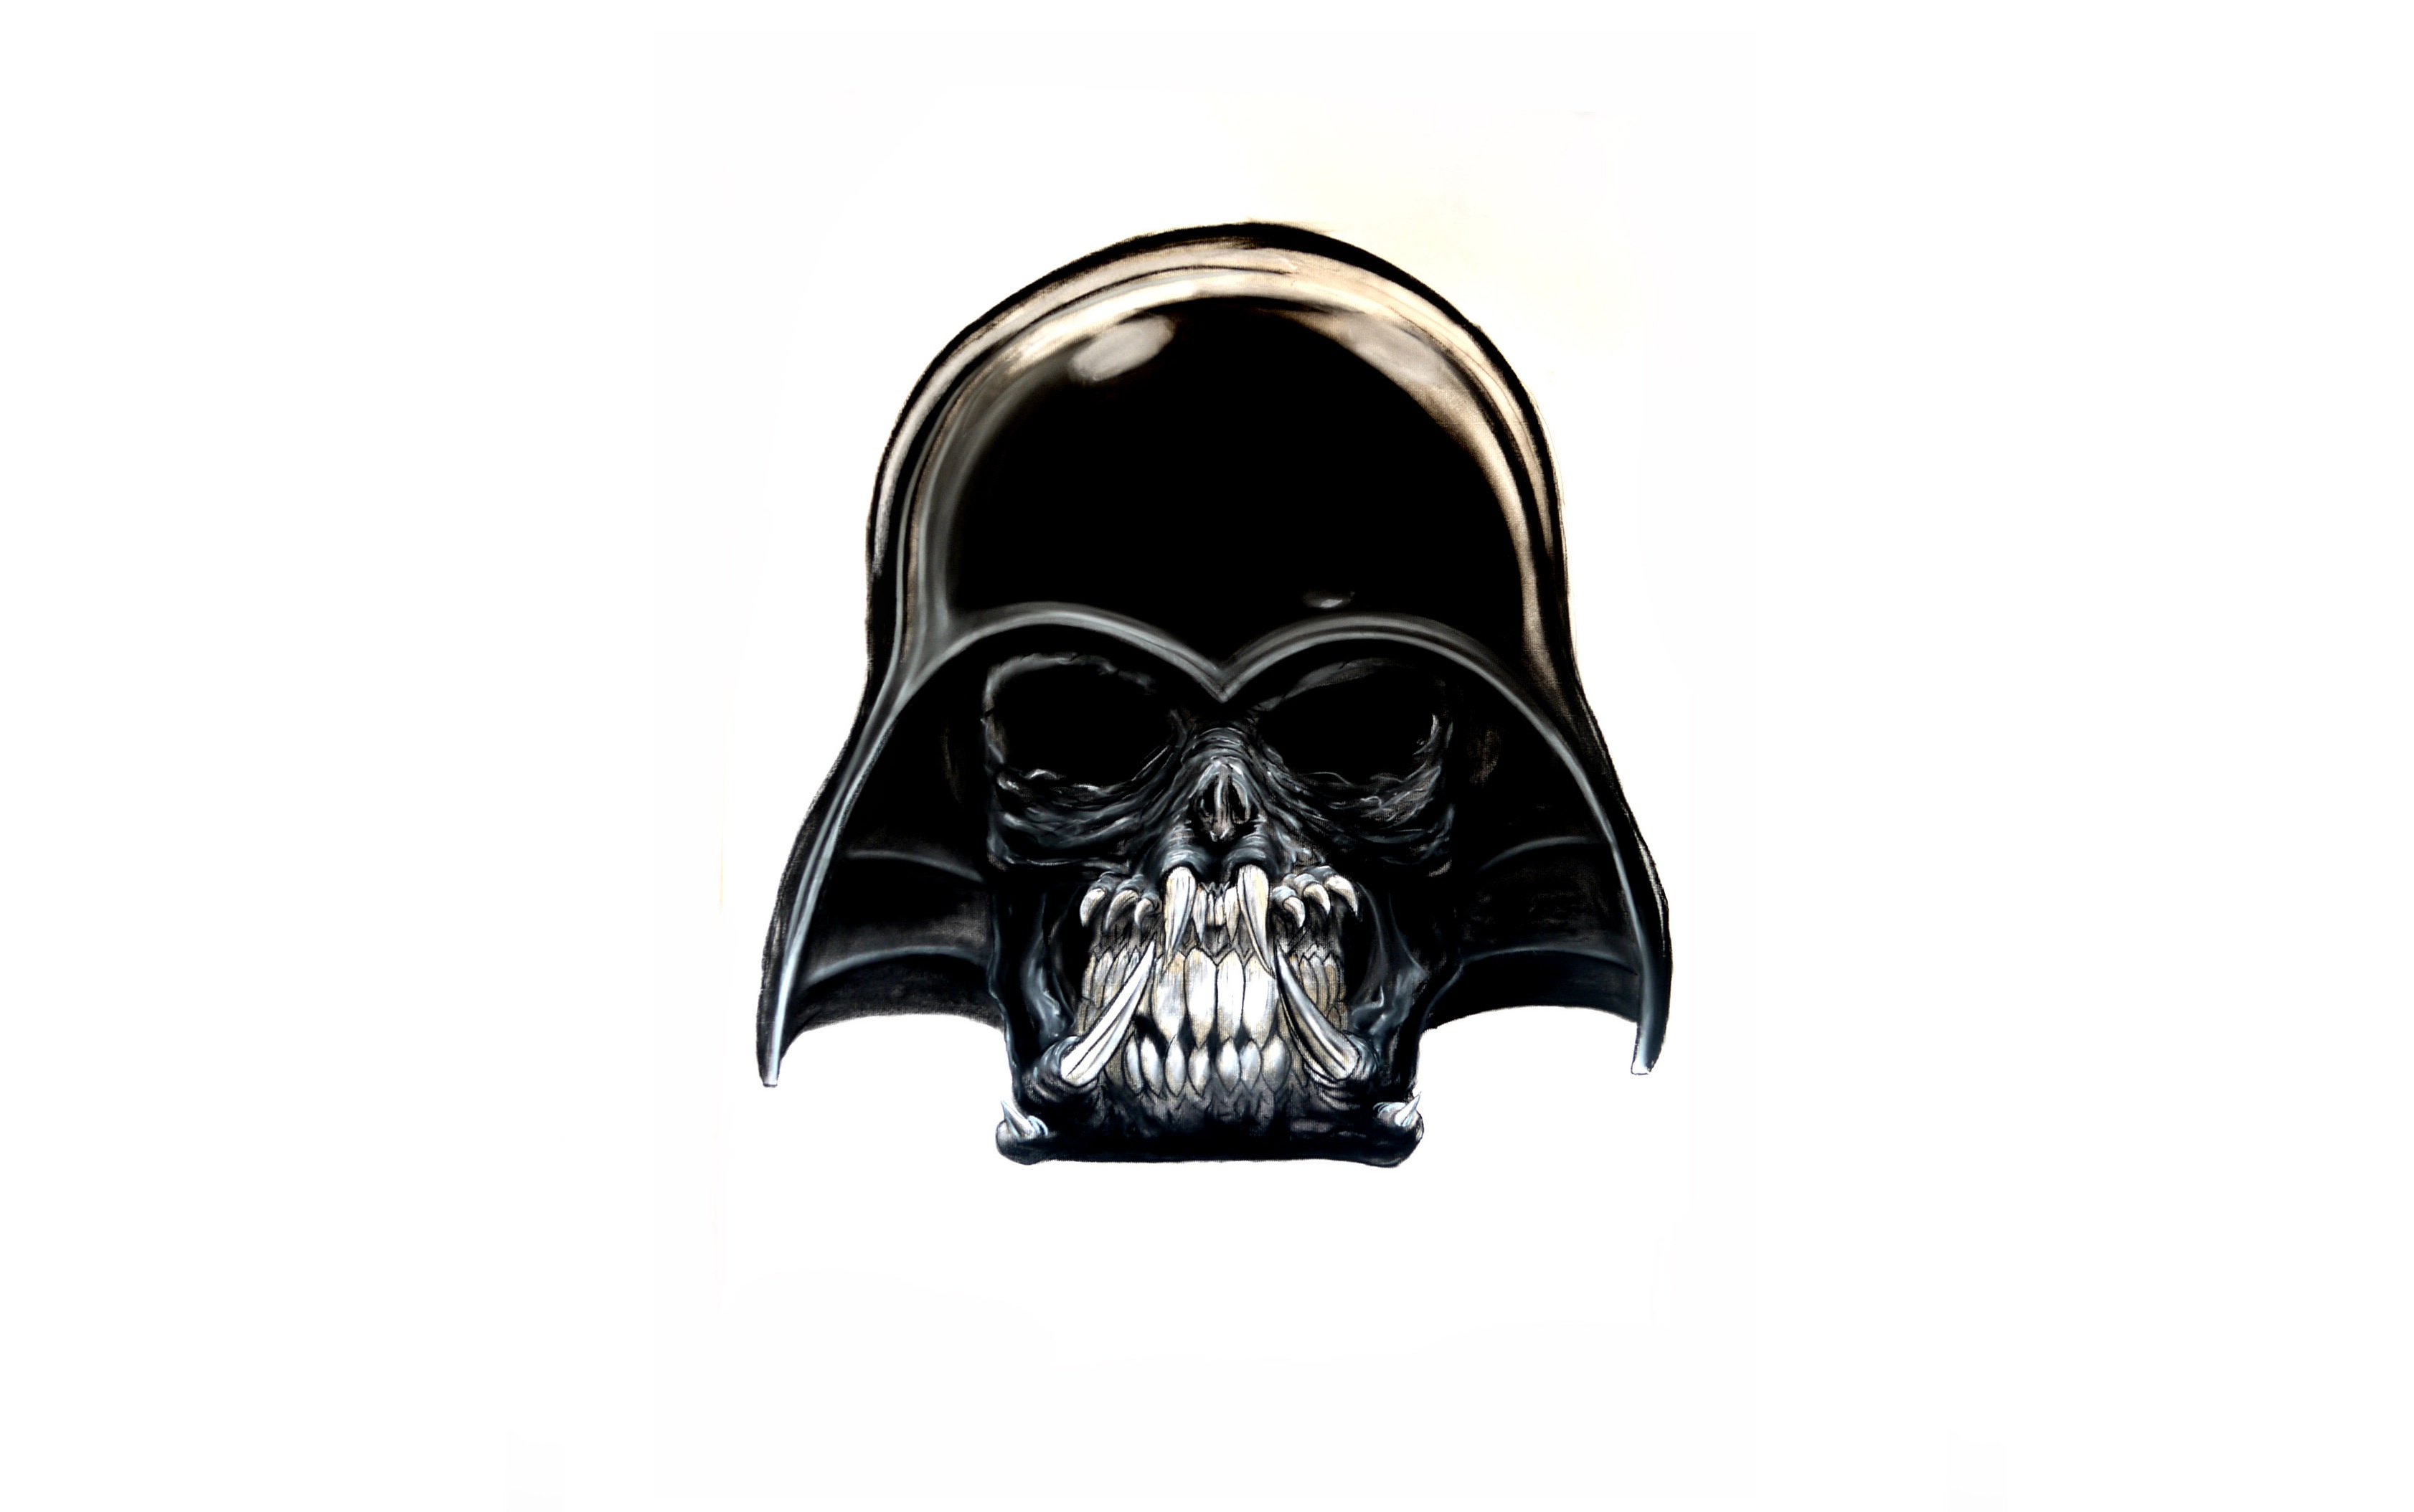 Crossover Darth Vader Predator Star Wars 3365x2108